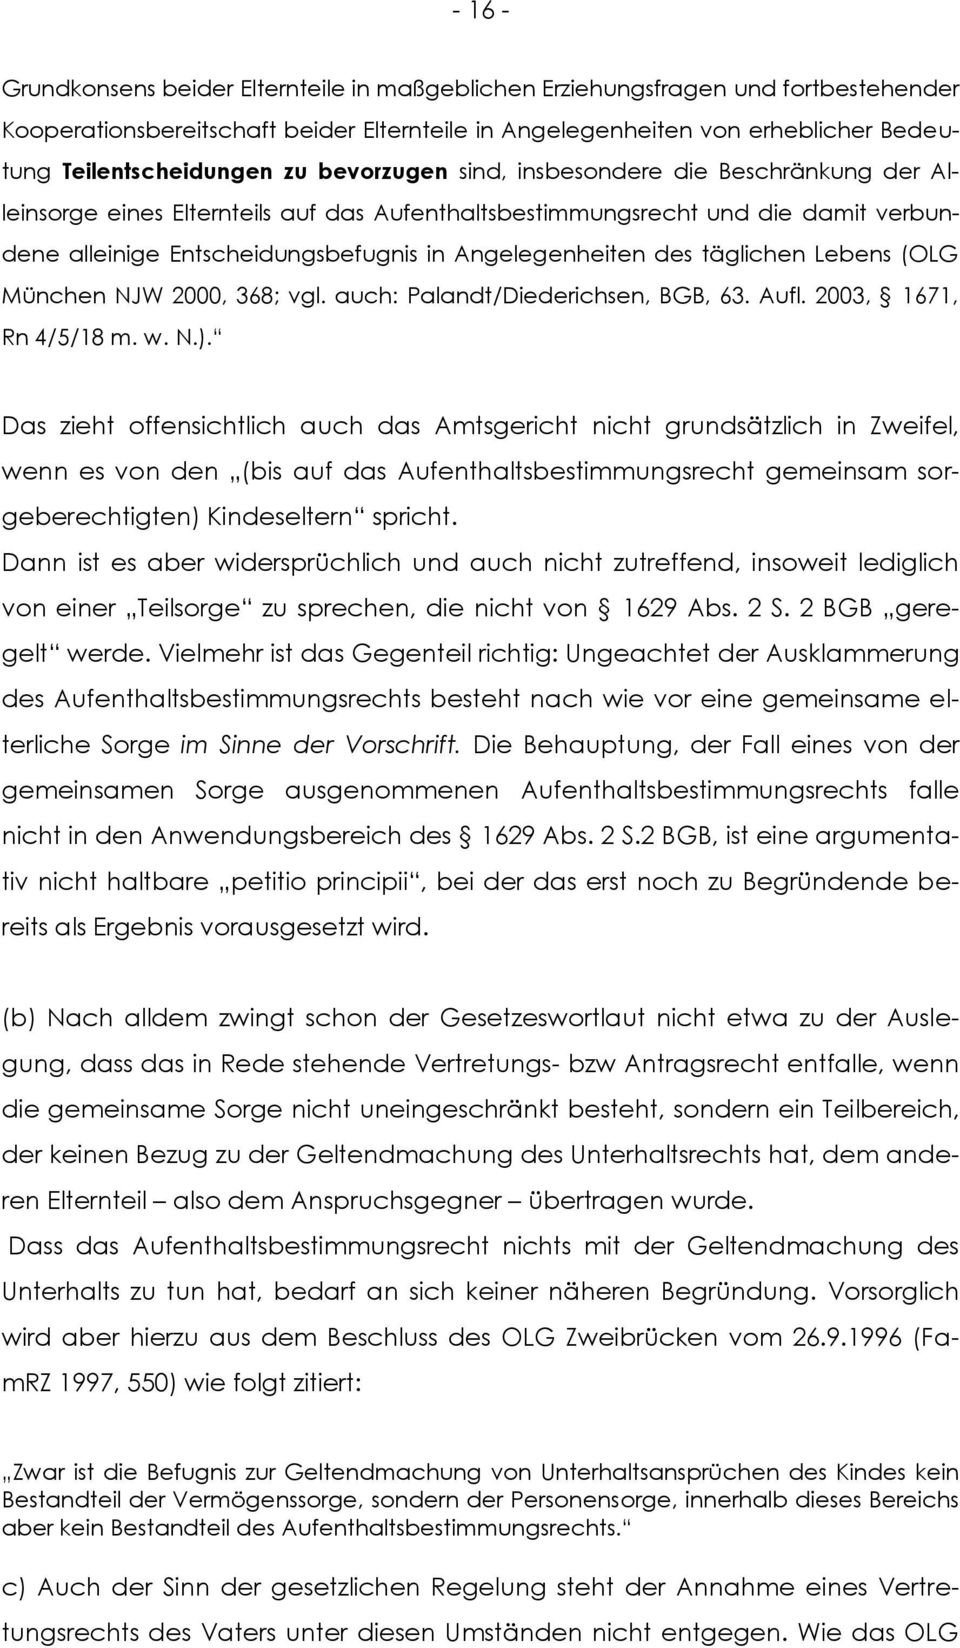 täglichen Lebens (OLG München NJW 2000, 368; vgl. auch: Palandt/Diederichsen, BGB, 63. Aufl. 2003, 1671, Rn 4/5/18 m. w. N.).